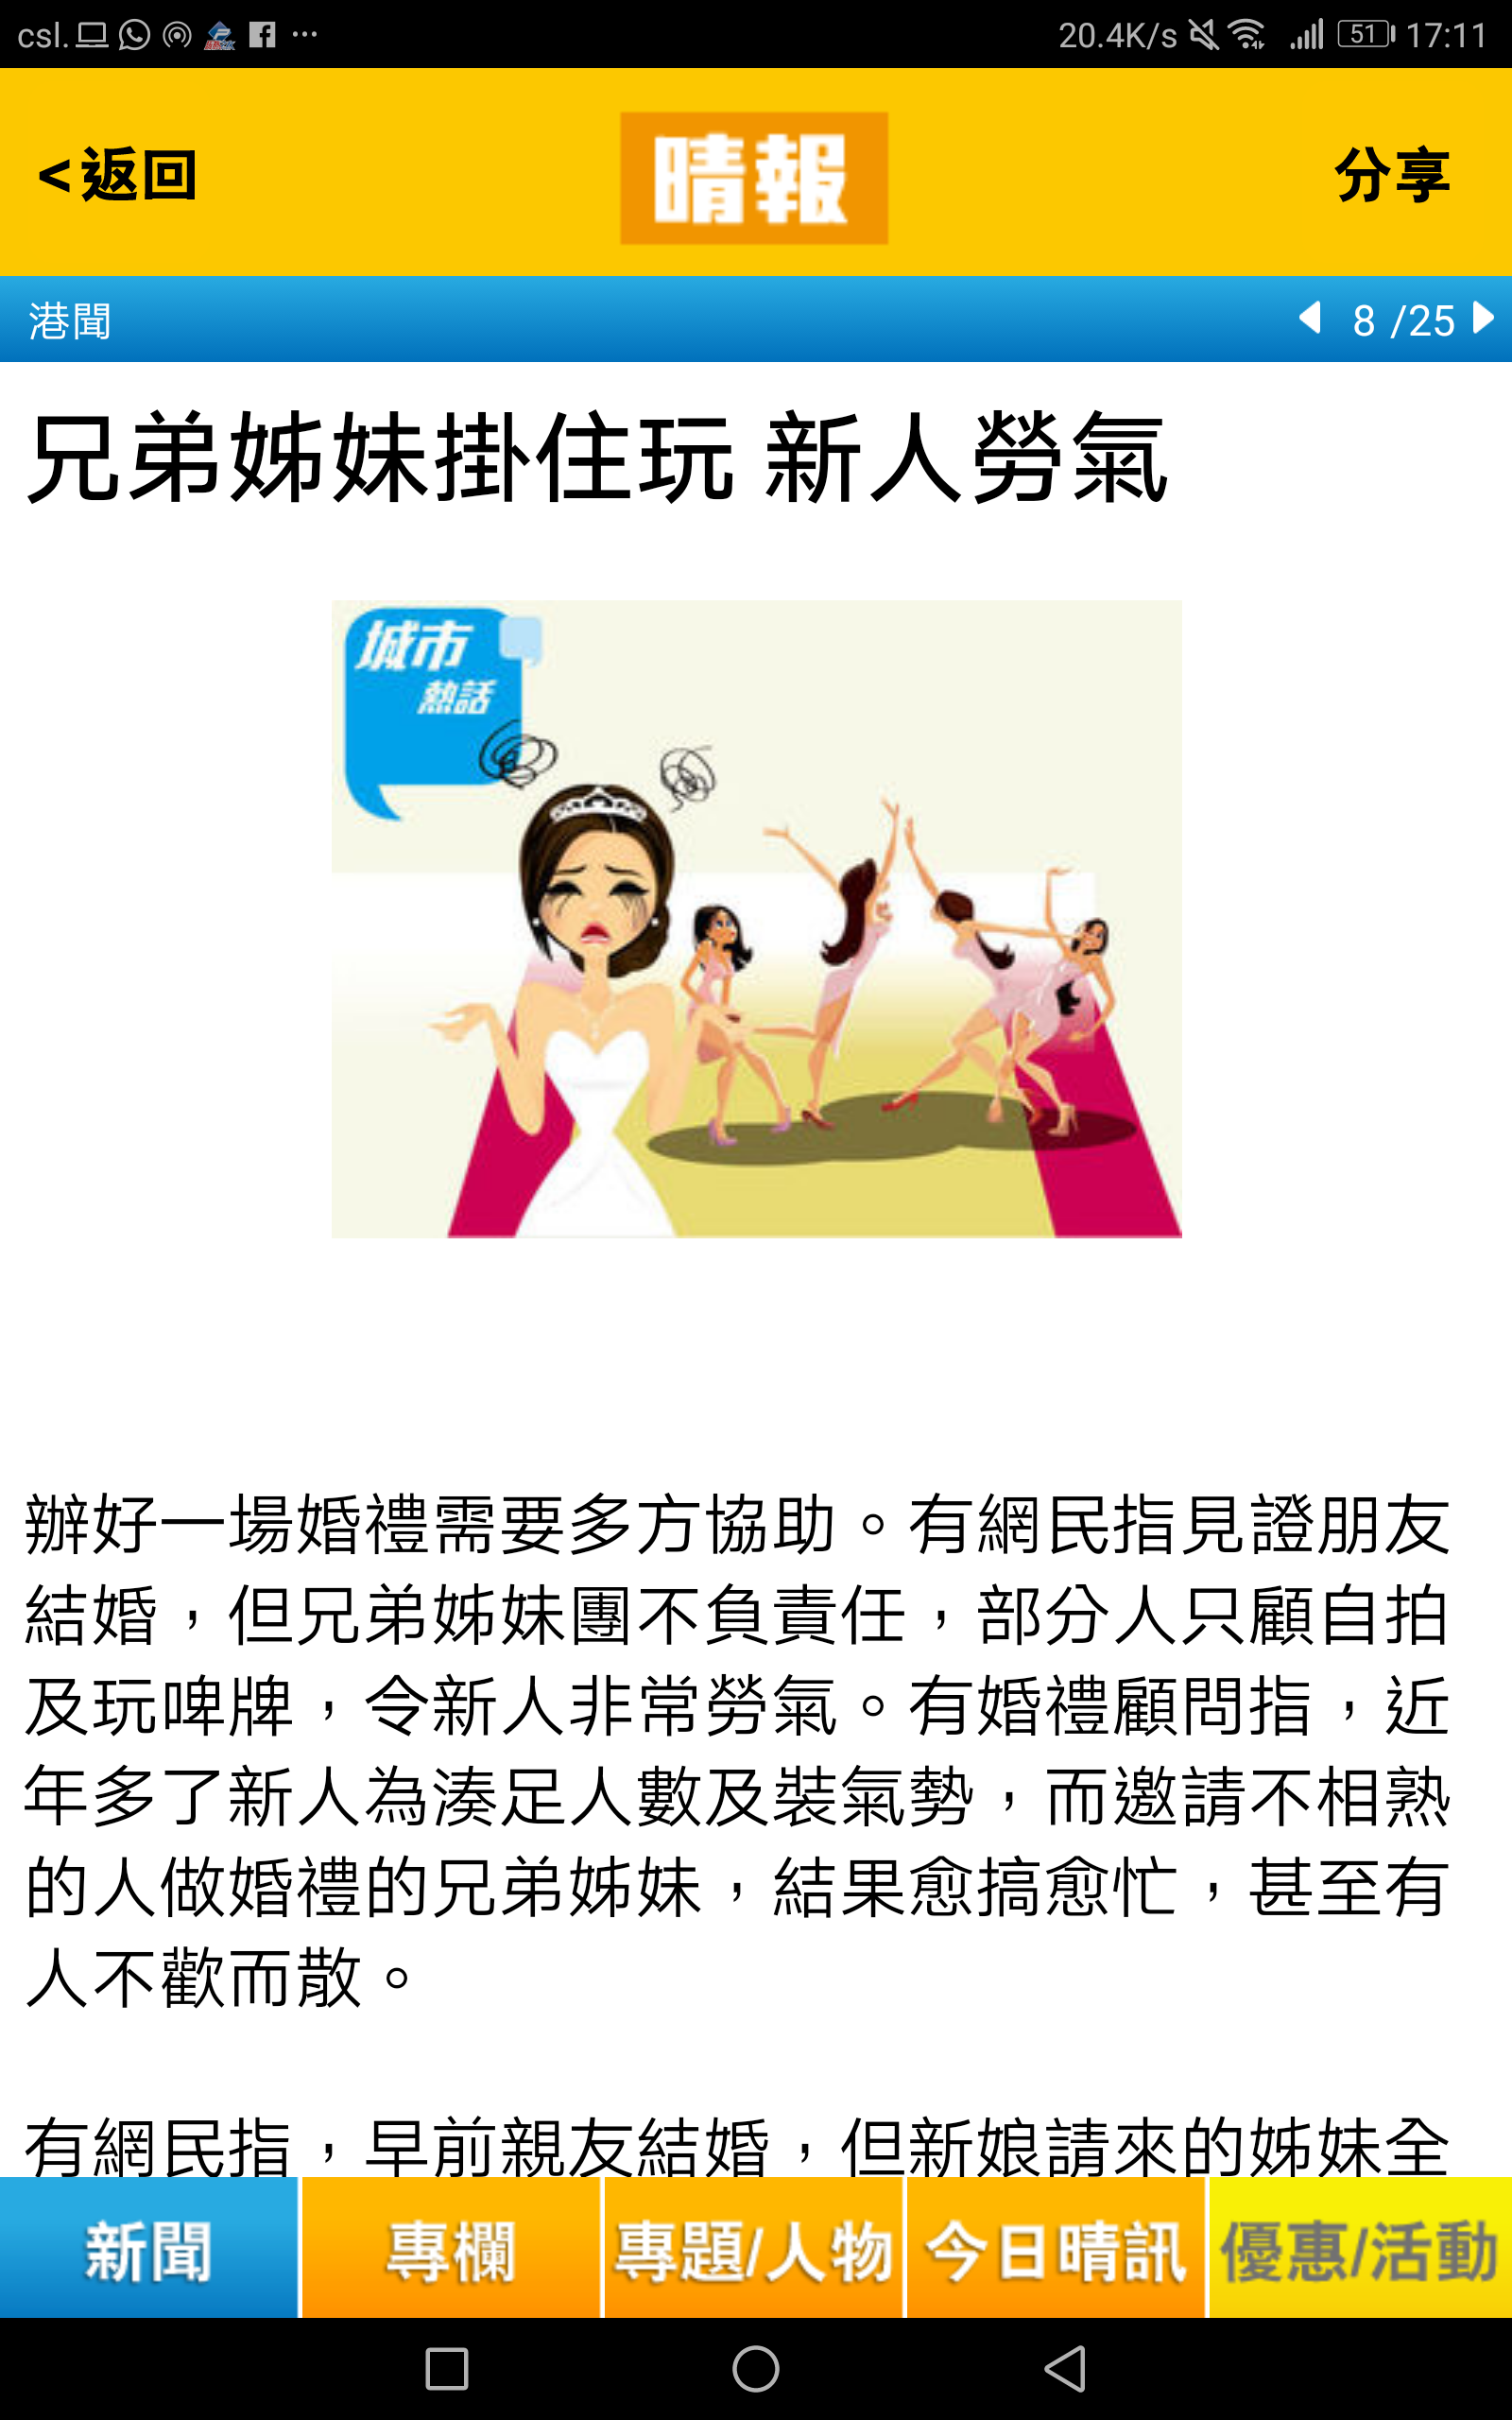 譚海祥Billy Tam 婚禮統籌師傳媒報導: 兄弟姊妹掛住玩 新人勞氣